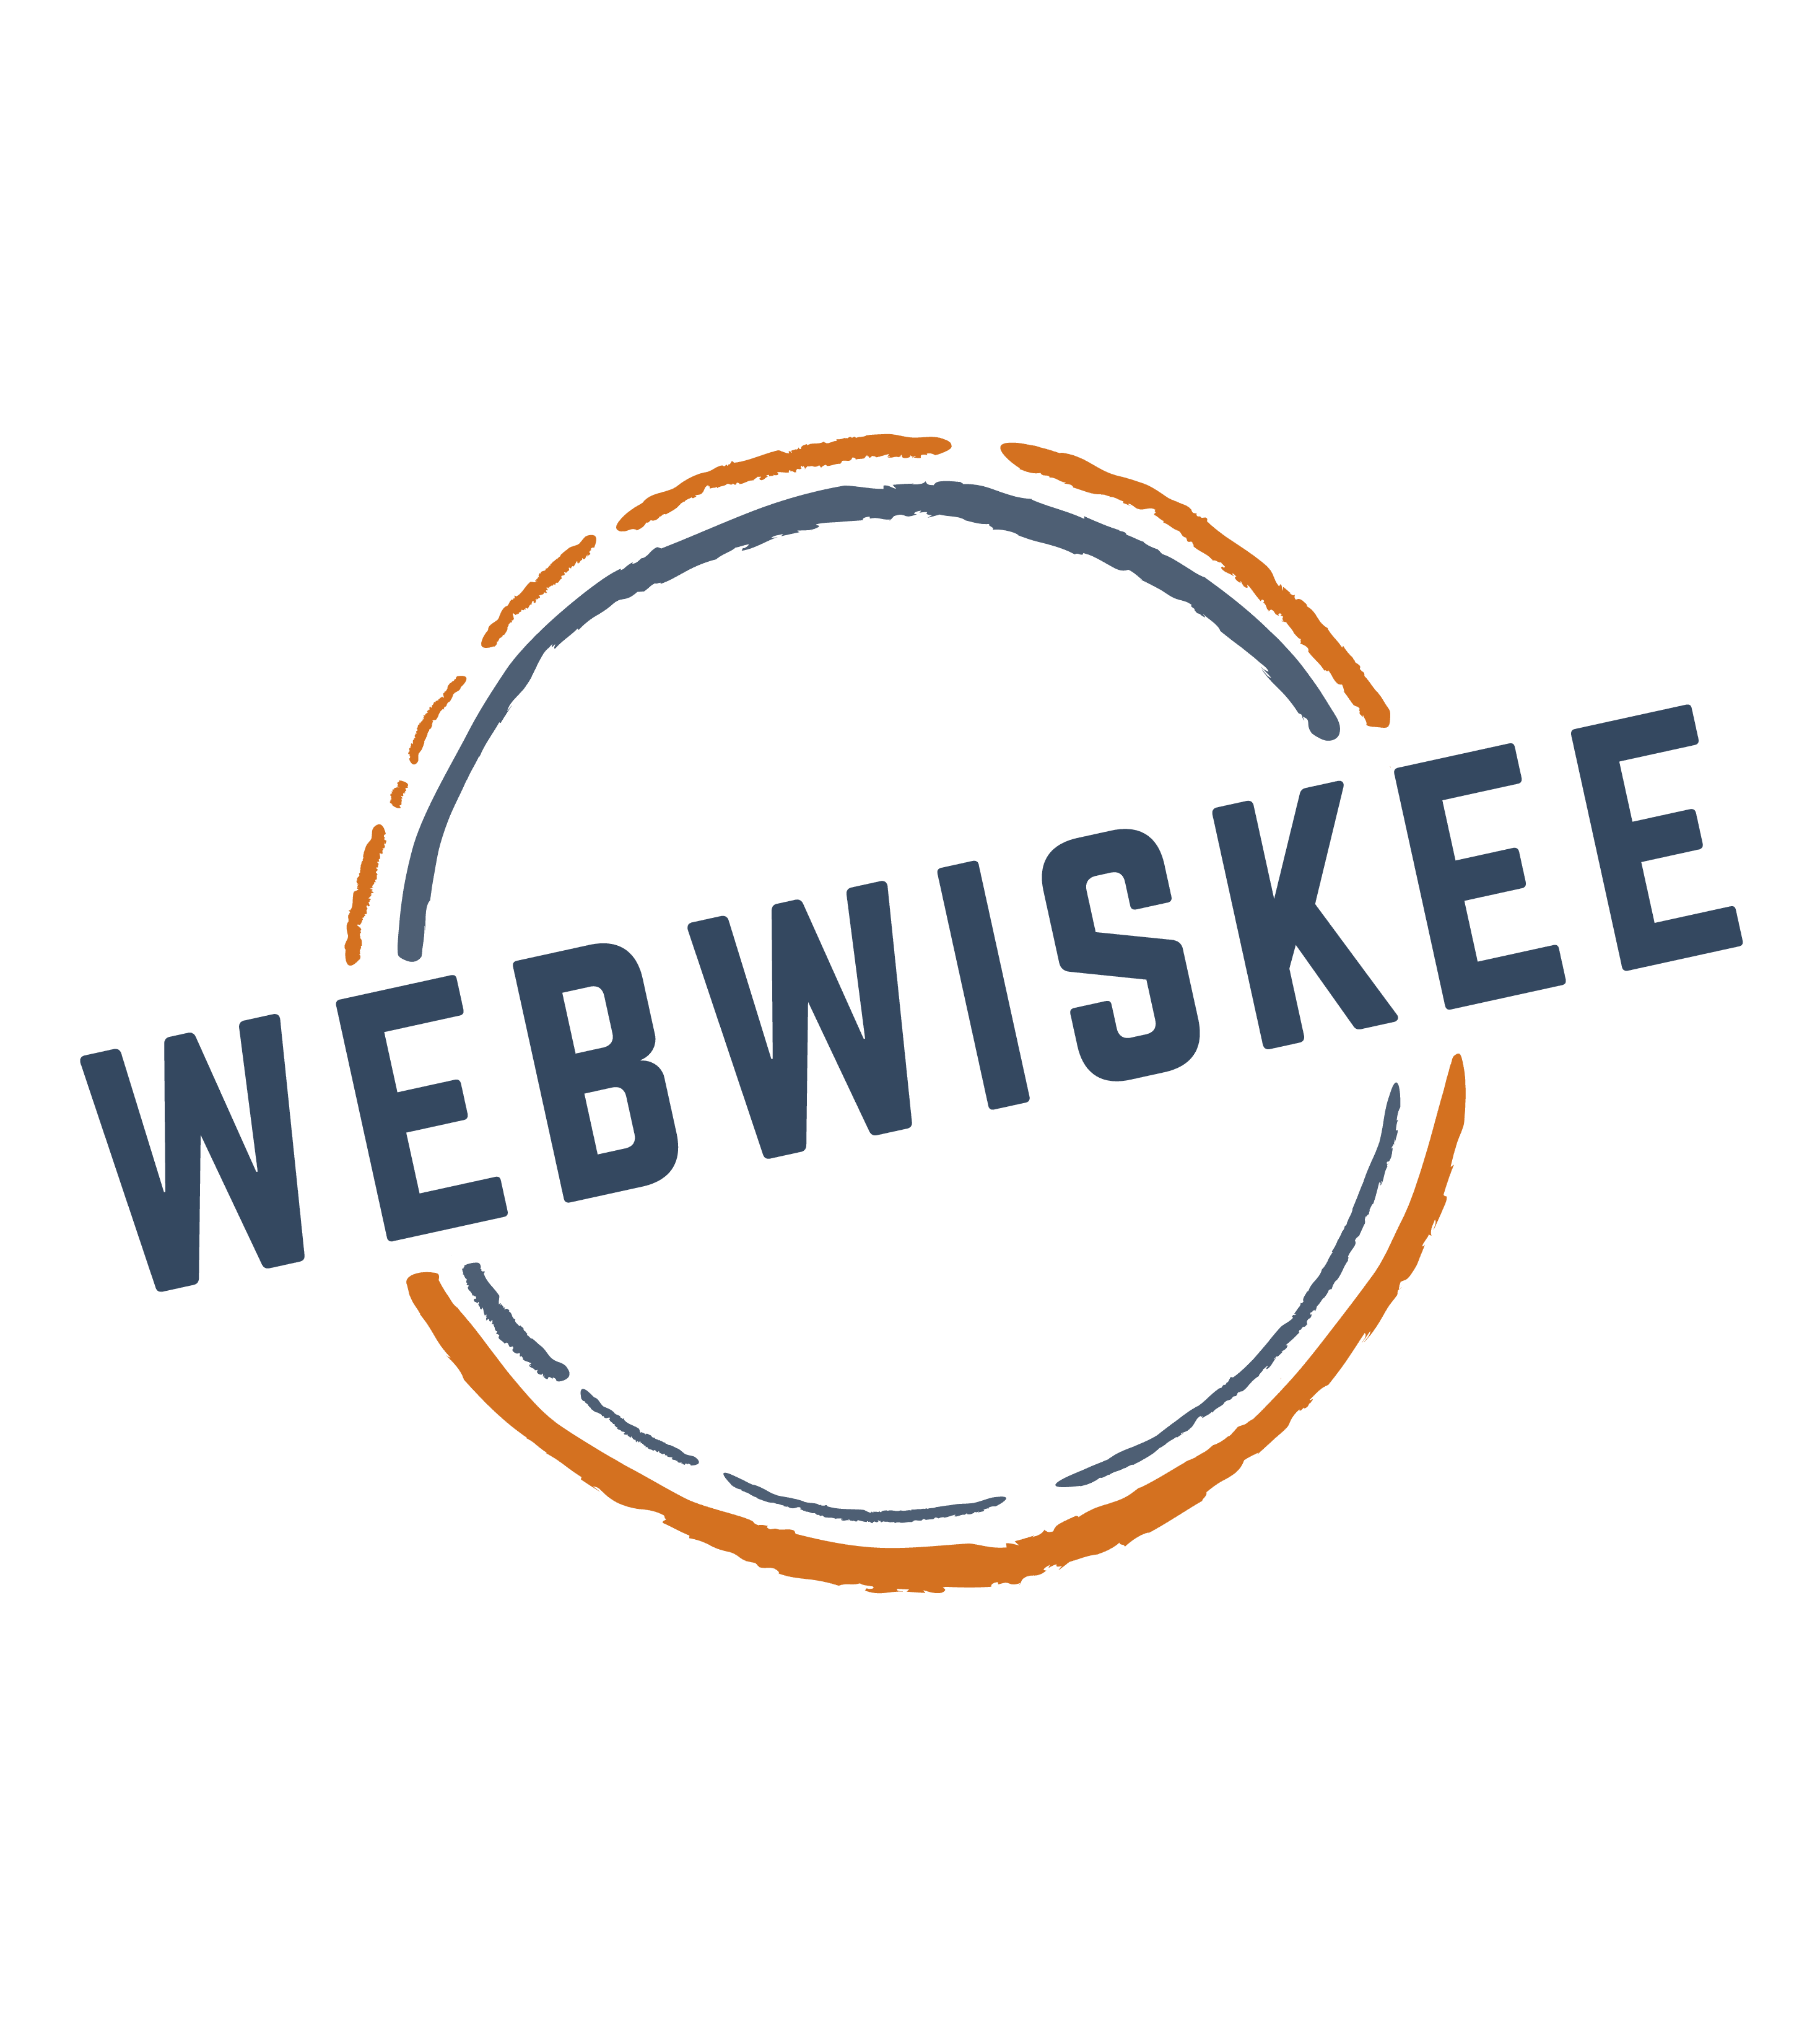 WebWiskee orange and blue logo